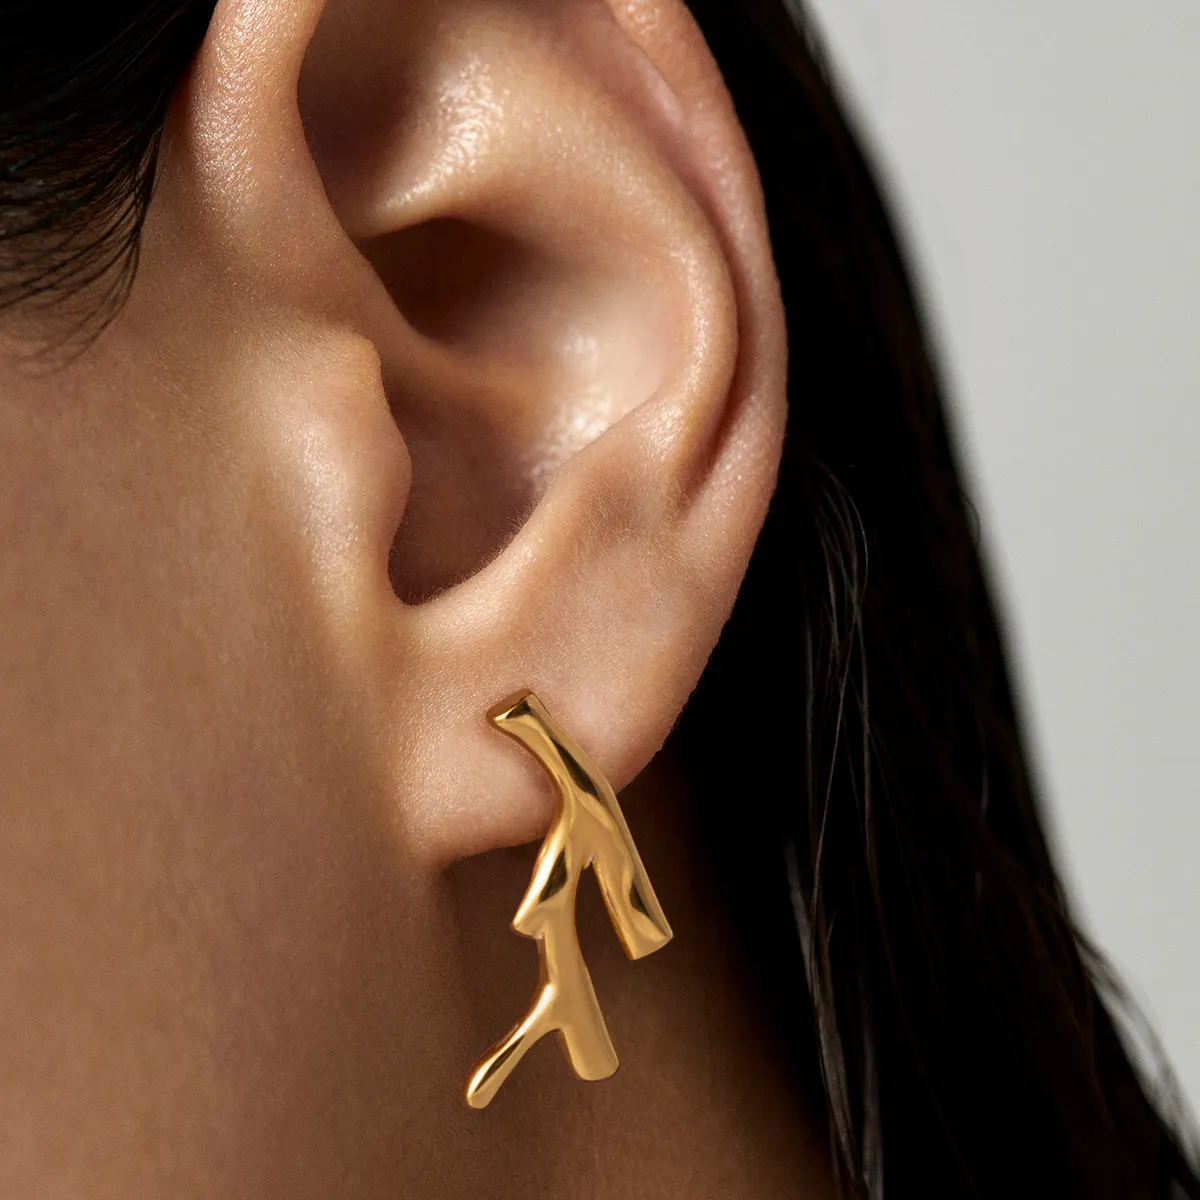 J & D 패션 쥬얼리 스테인레스 스틸 오션 시리즈 귀걸이 18K 금도금 질감 산호 스터드 귀걸이